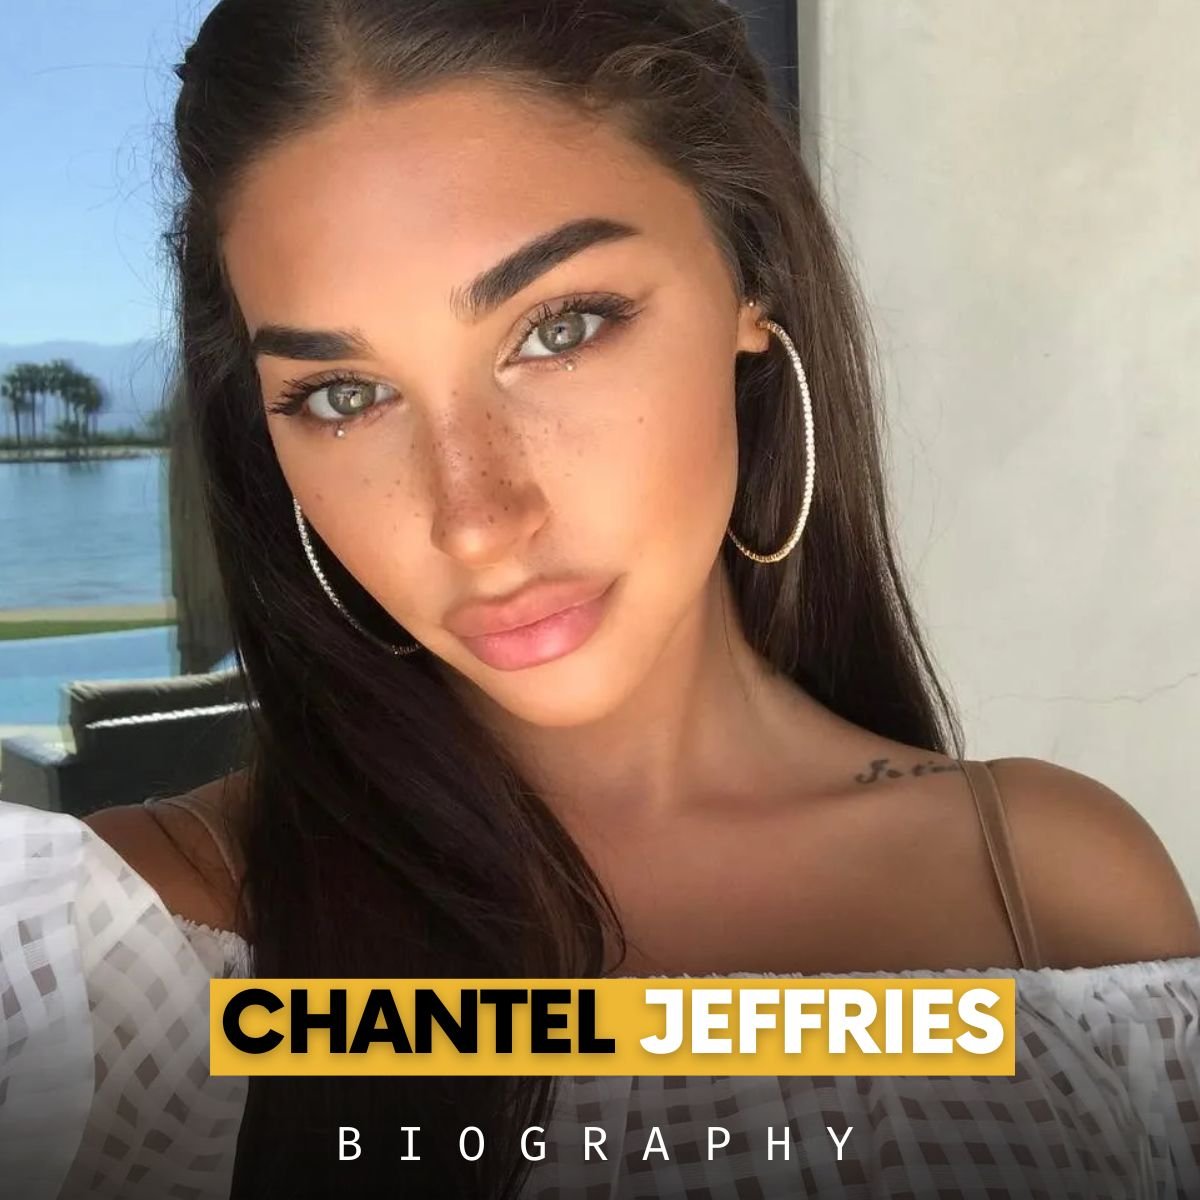 Chantel Jeffries biography